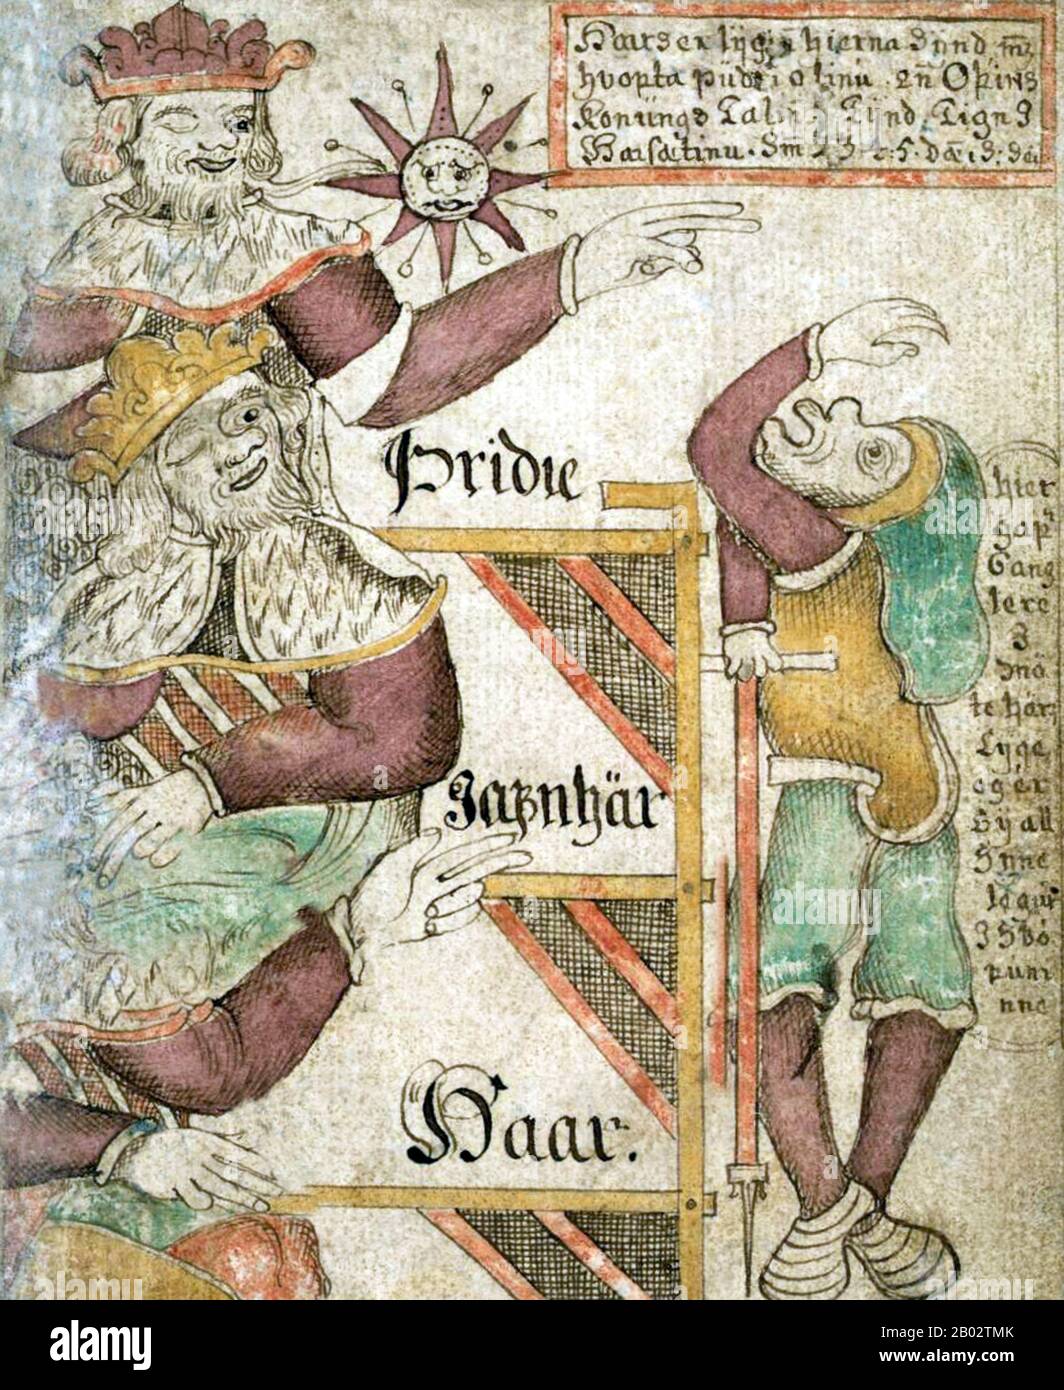 La Edda Poética es una colección de poemas del nórdico antiguo preservados  principalmente en el manuscrito medieval islandés Codex Regius. Junto con  la Edda prosa de Snorri Sturluson, la Edda Poética es